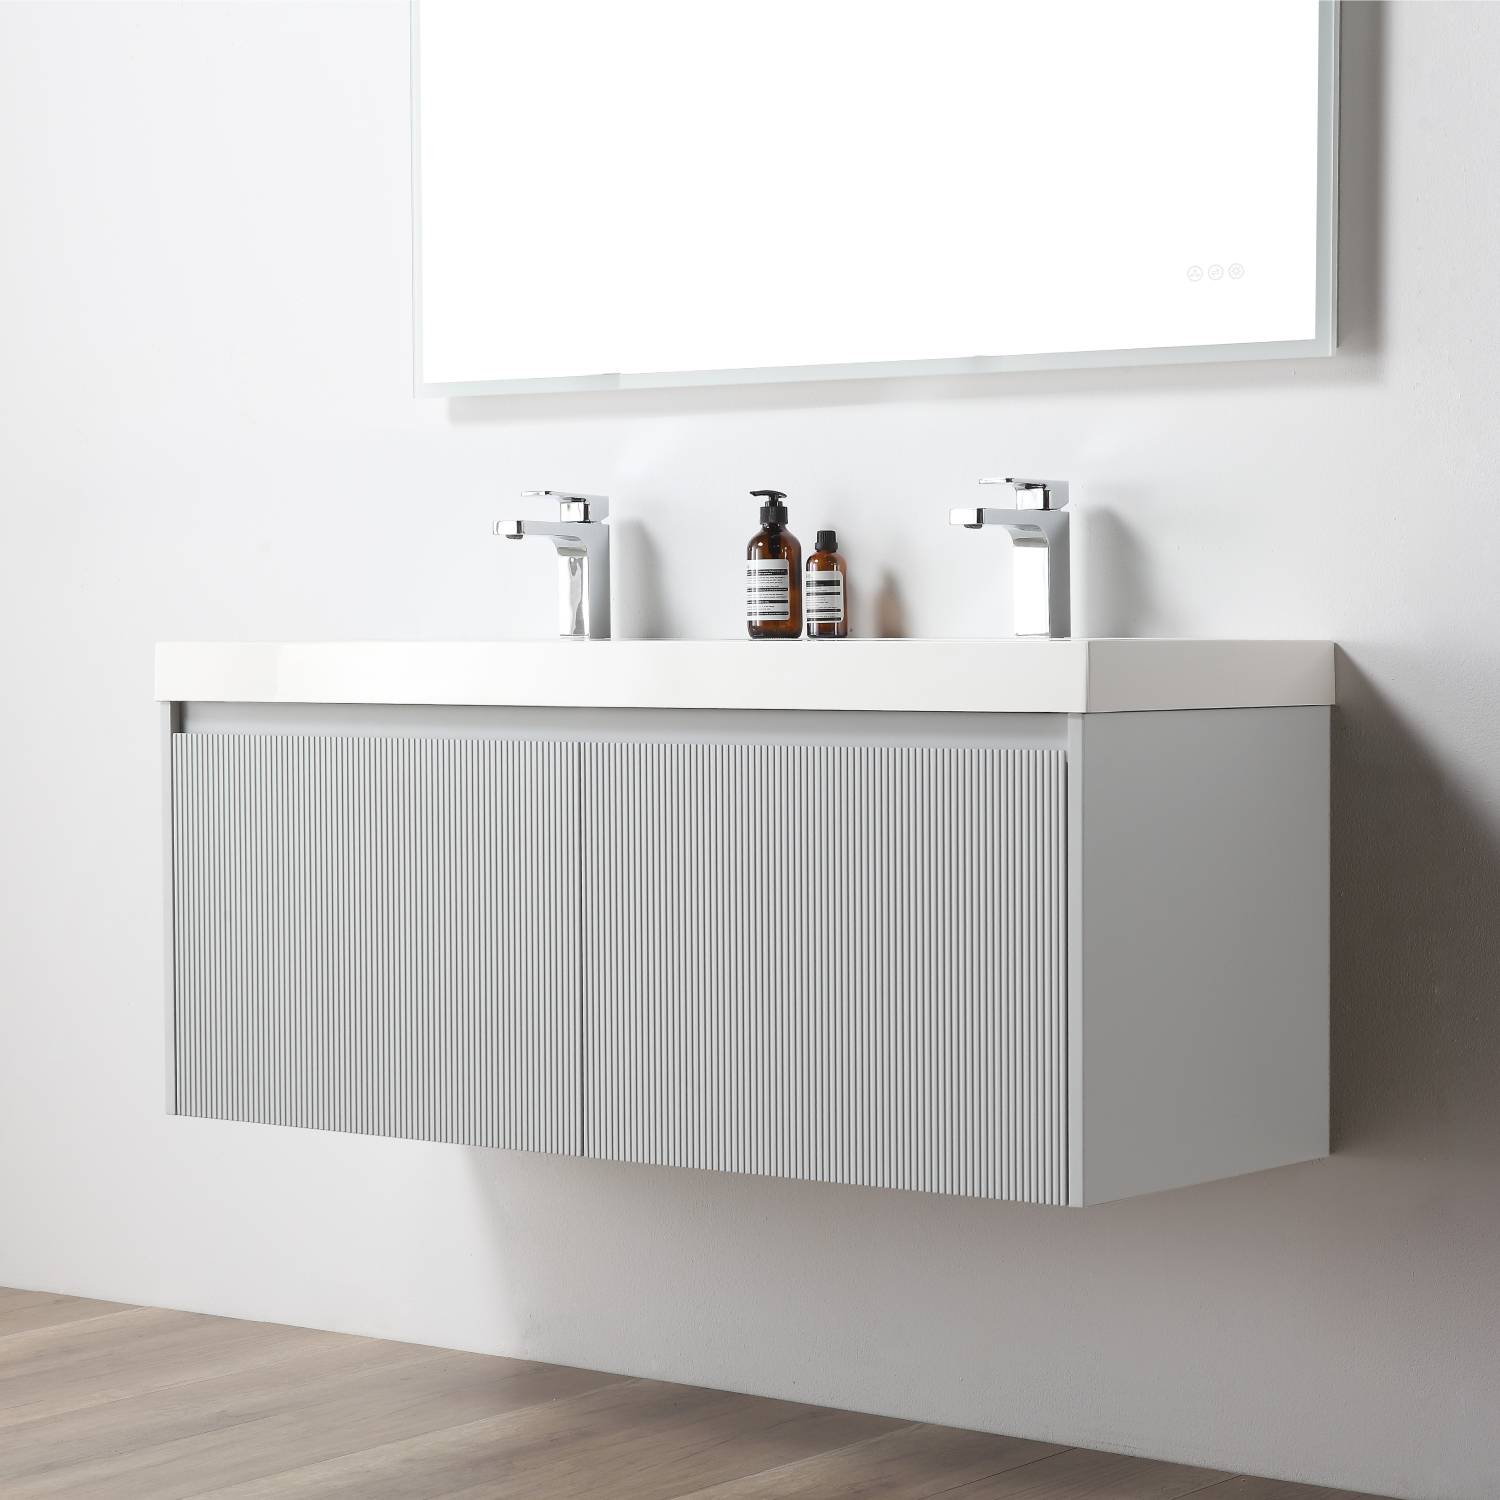 Positano 48" Bathroom Vanity  #size_48" Double  #color_light grey